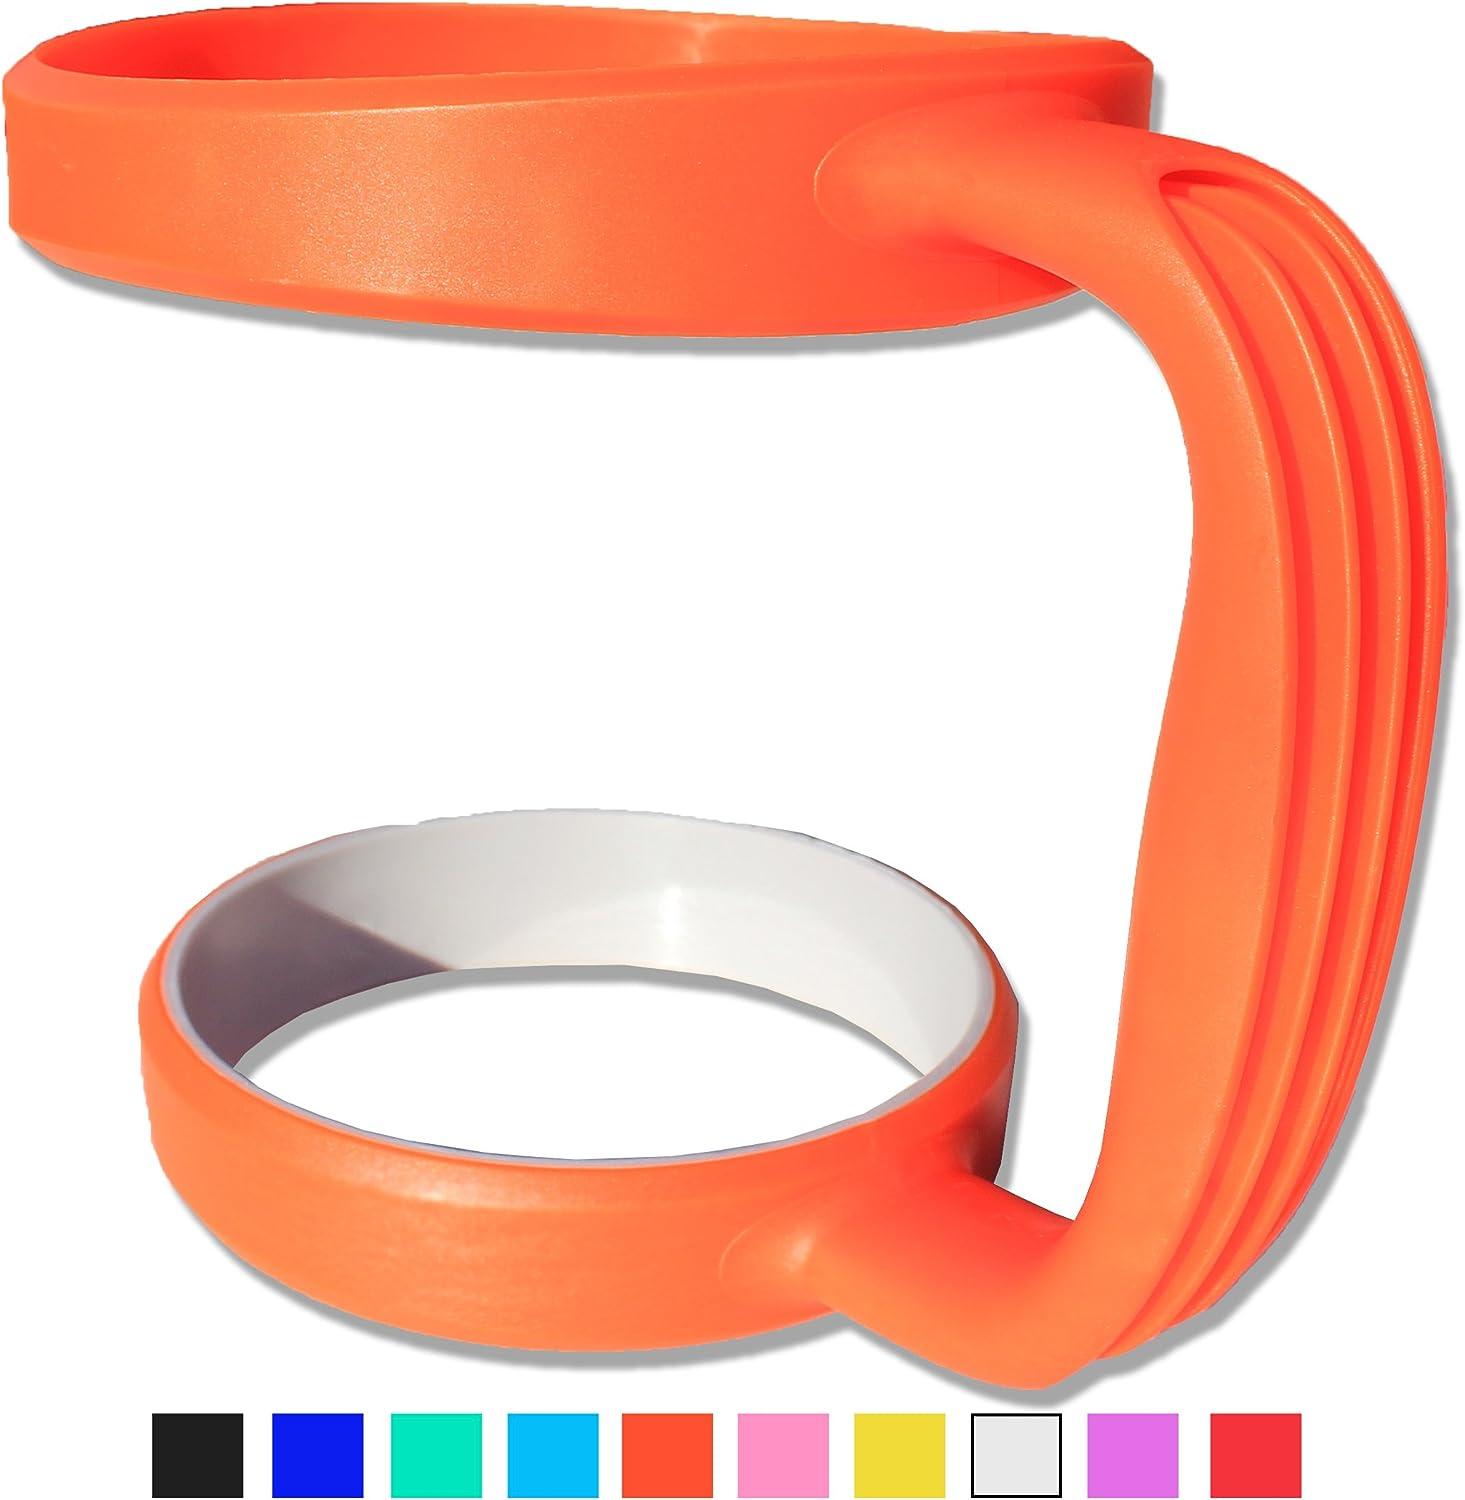 Grapplr Cup Handle f/ Yeti 30oz Rambler w/ TackleDirect Logo Seafoam